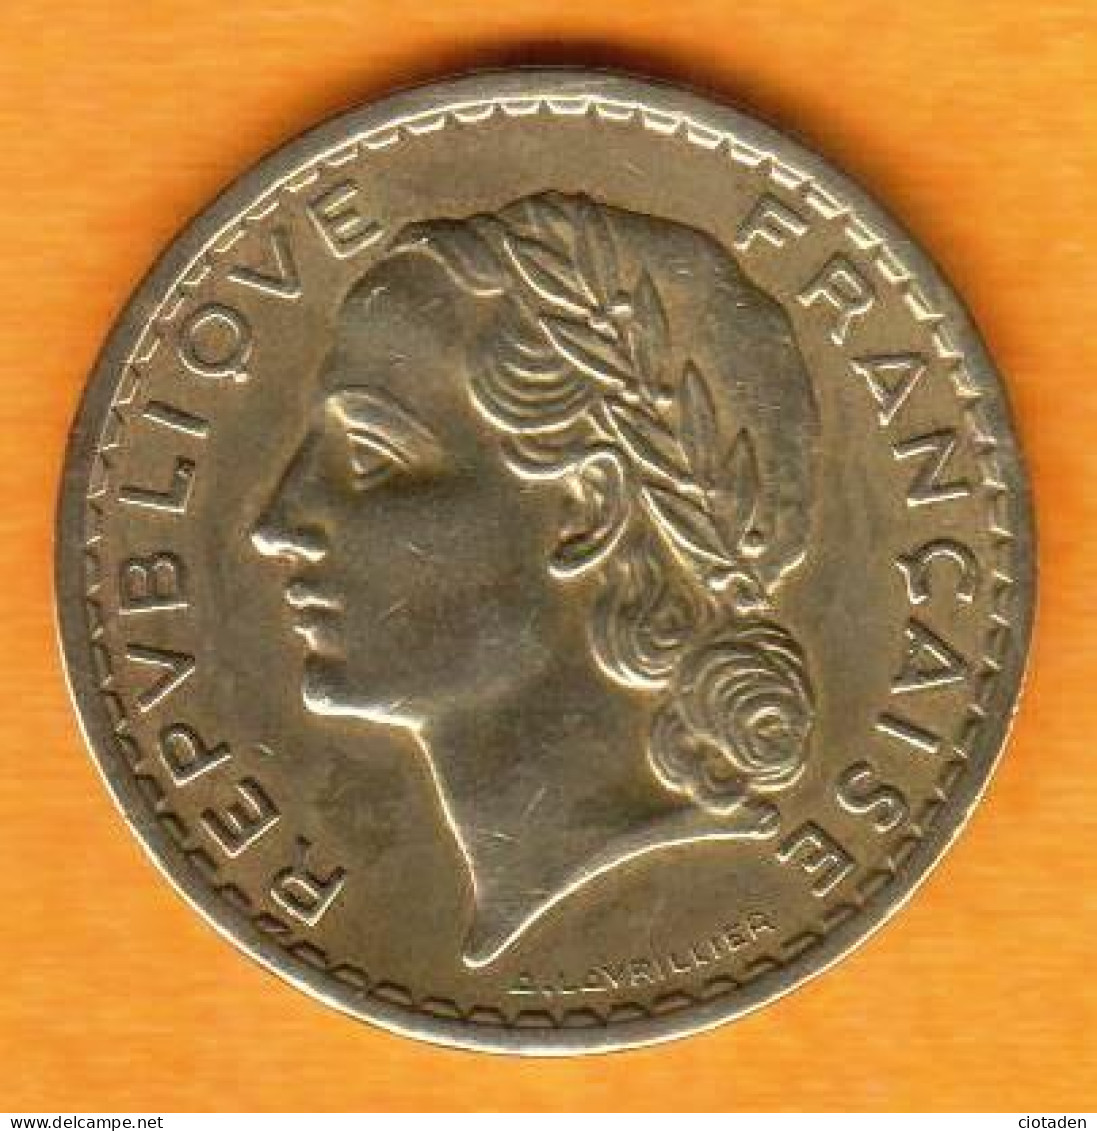 France - 5 Francs Laviller 1945C - Bronze - 5 Francs